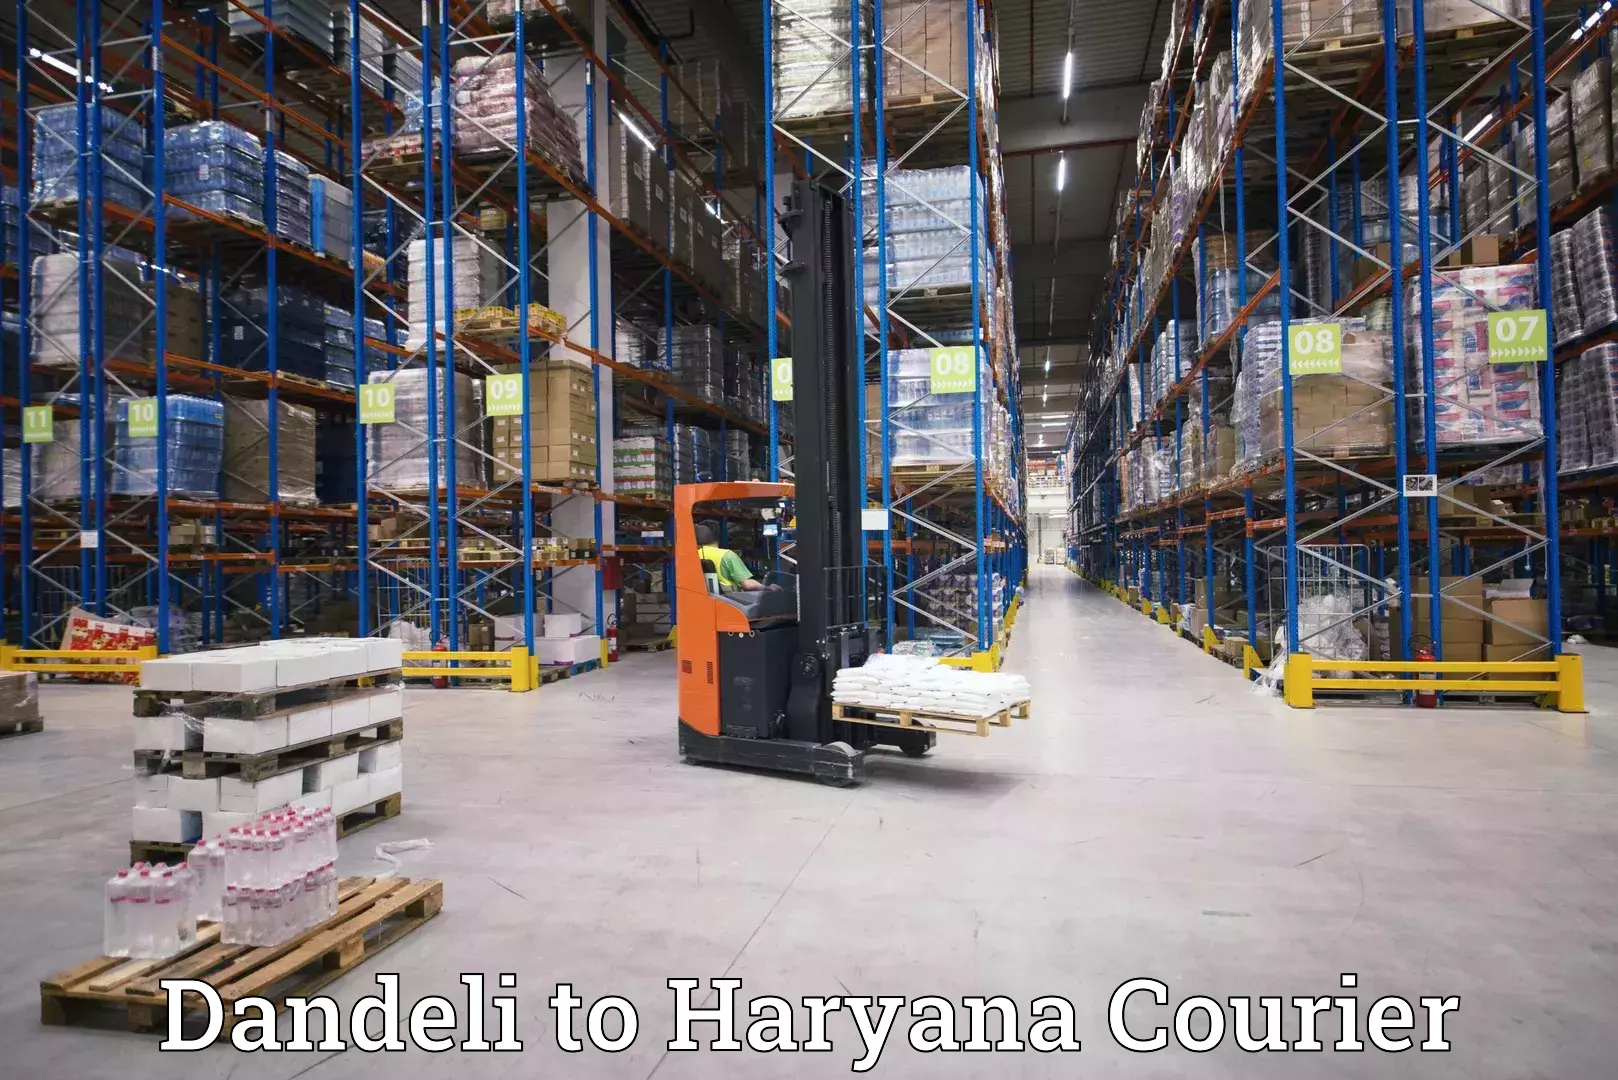 Flexible parcel services Dandeli to IIIT Sonepat